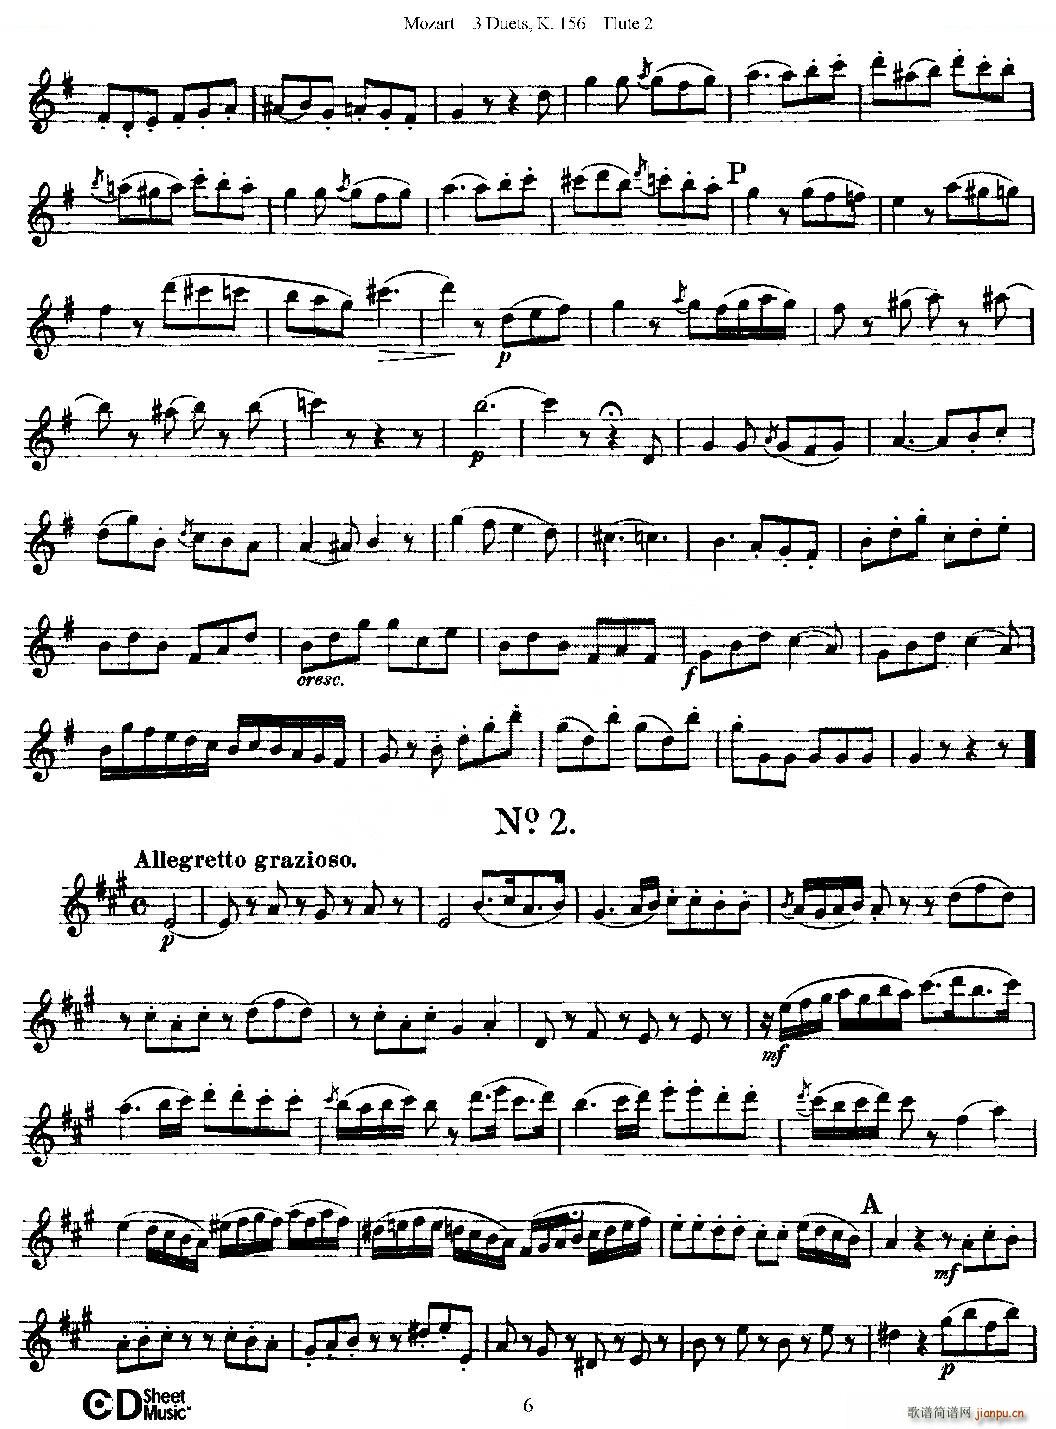 3 Duets K 156 之第二长笛 二重奏三首 K156号 铜管(笛箫谱)6